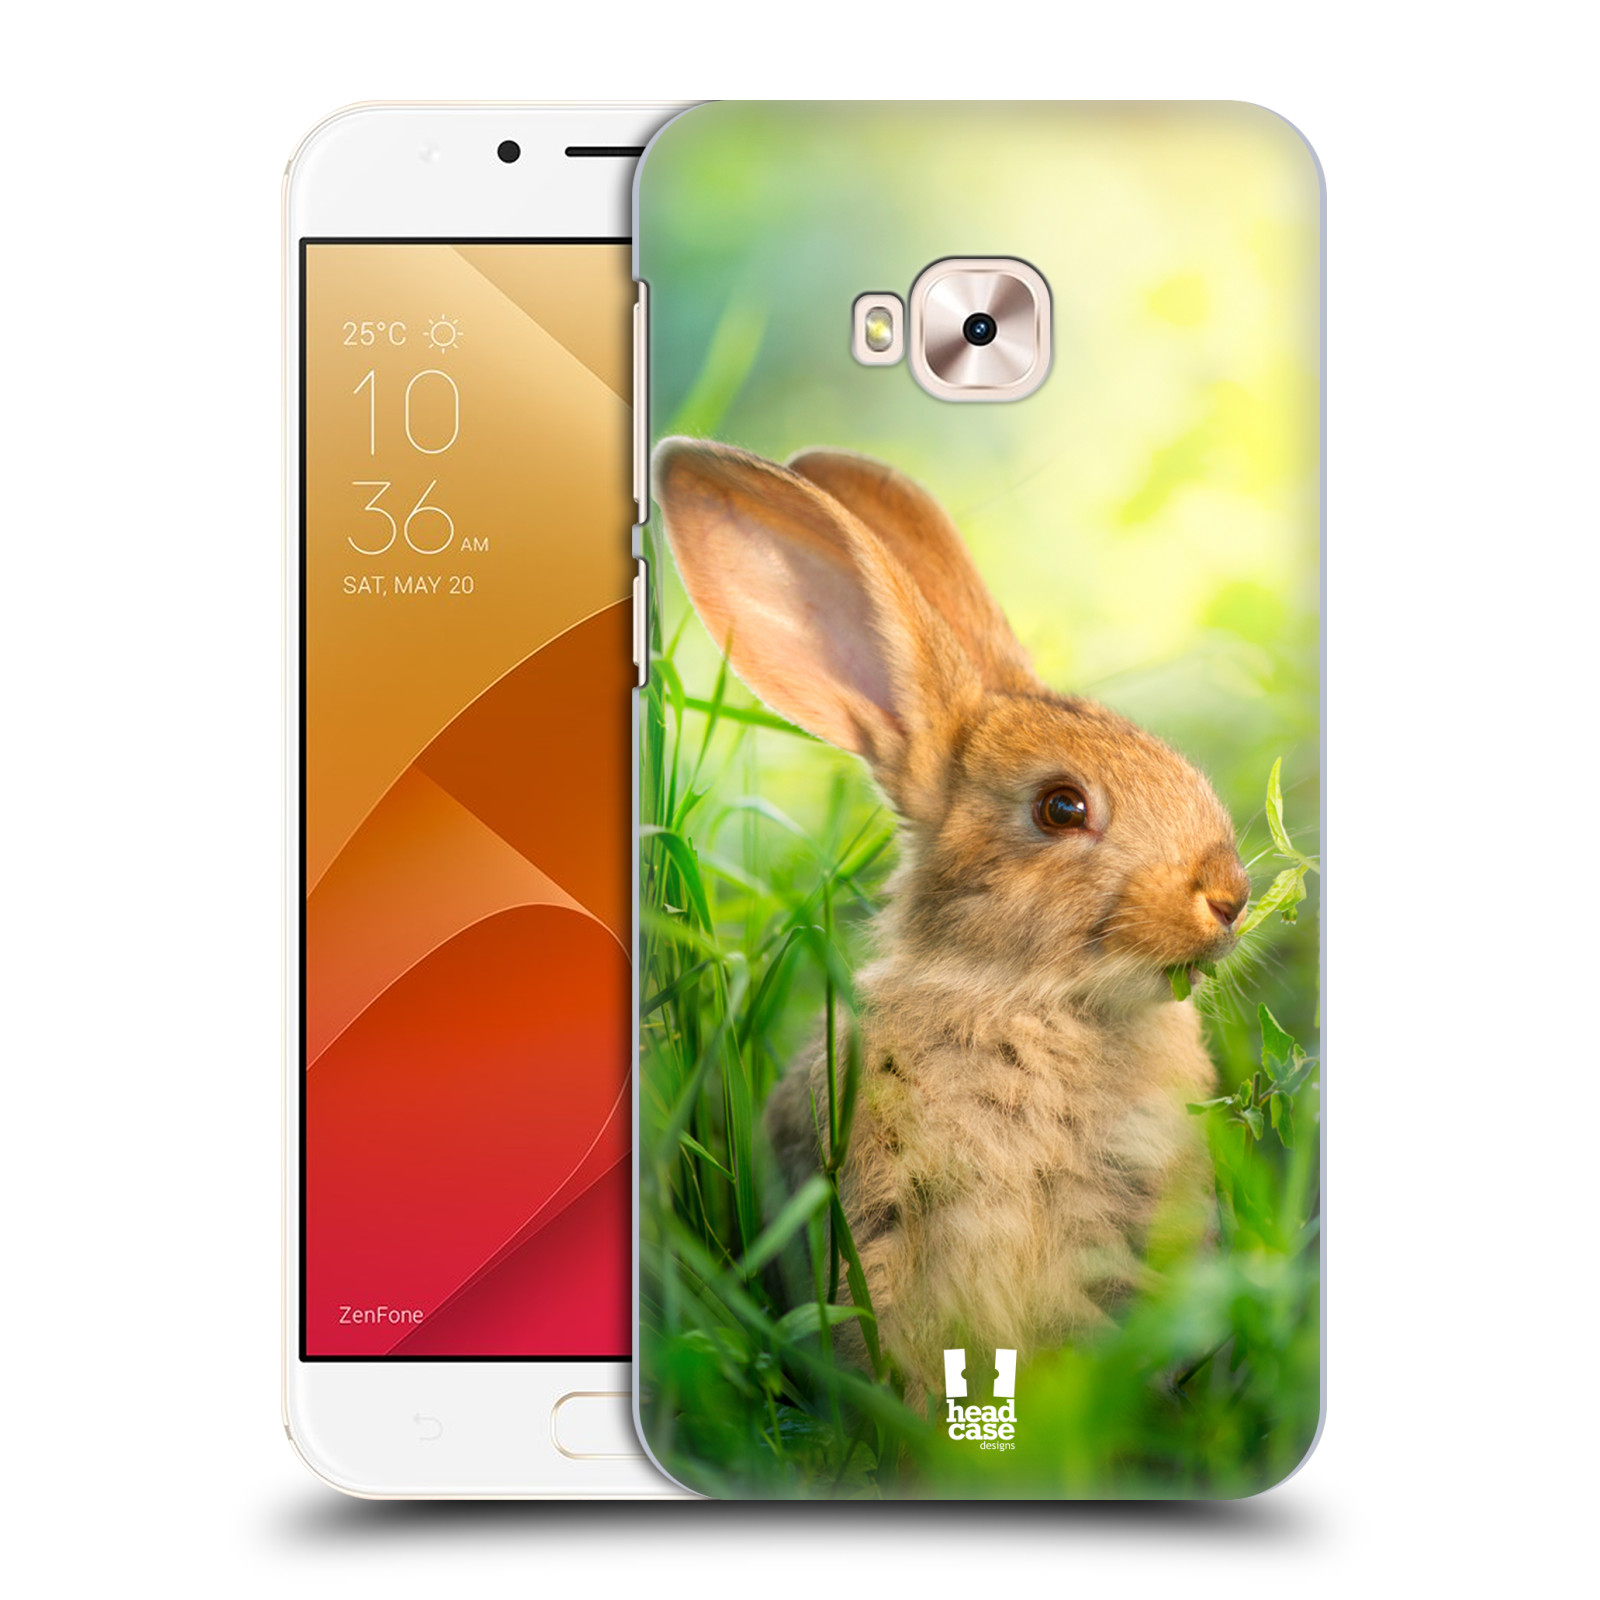 HEAD CASE plastový obal na mobil Asus Zenfone 4 Selfie Pro ZD552KL vzor Divočina, Divoký život a zvířata foto ZAJÍČEK V TRÁVĚ ZELENÁ